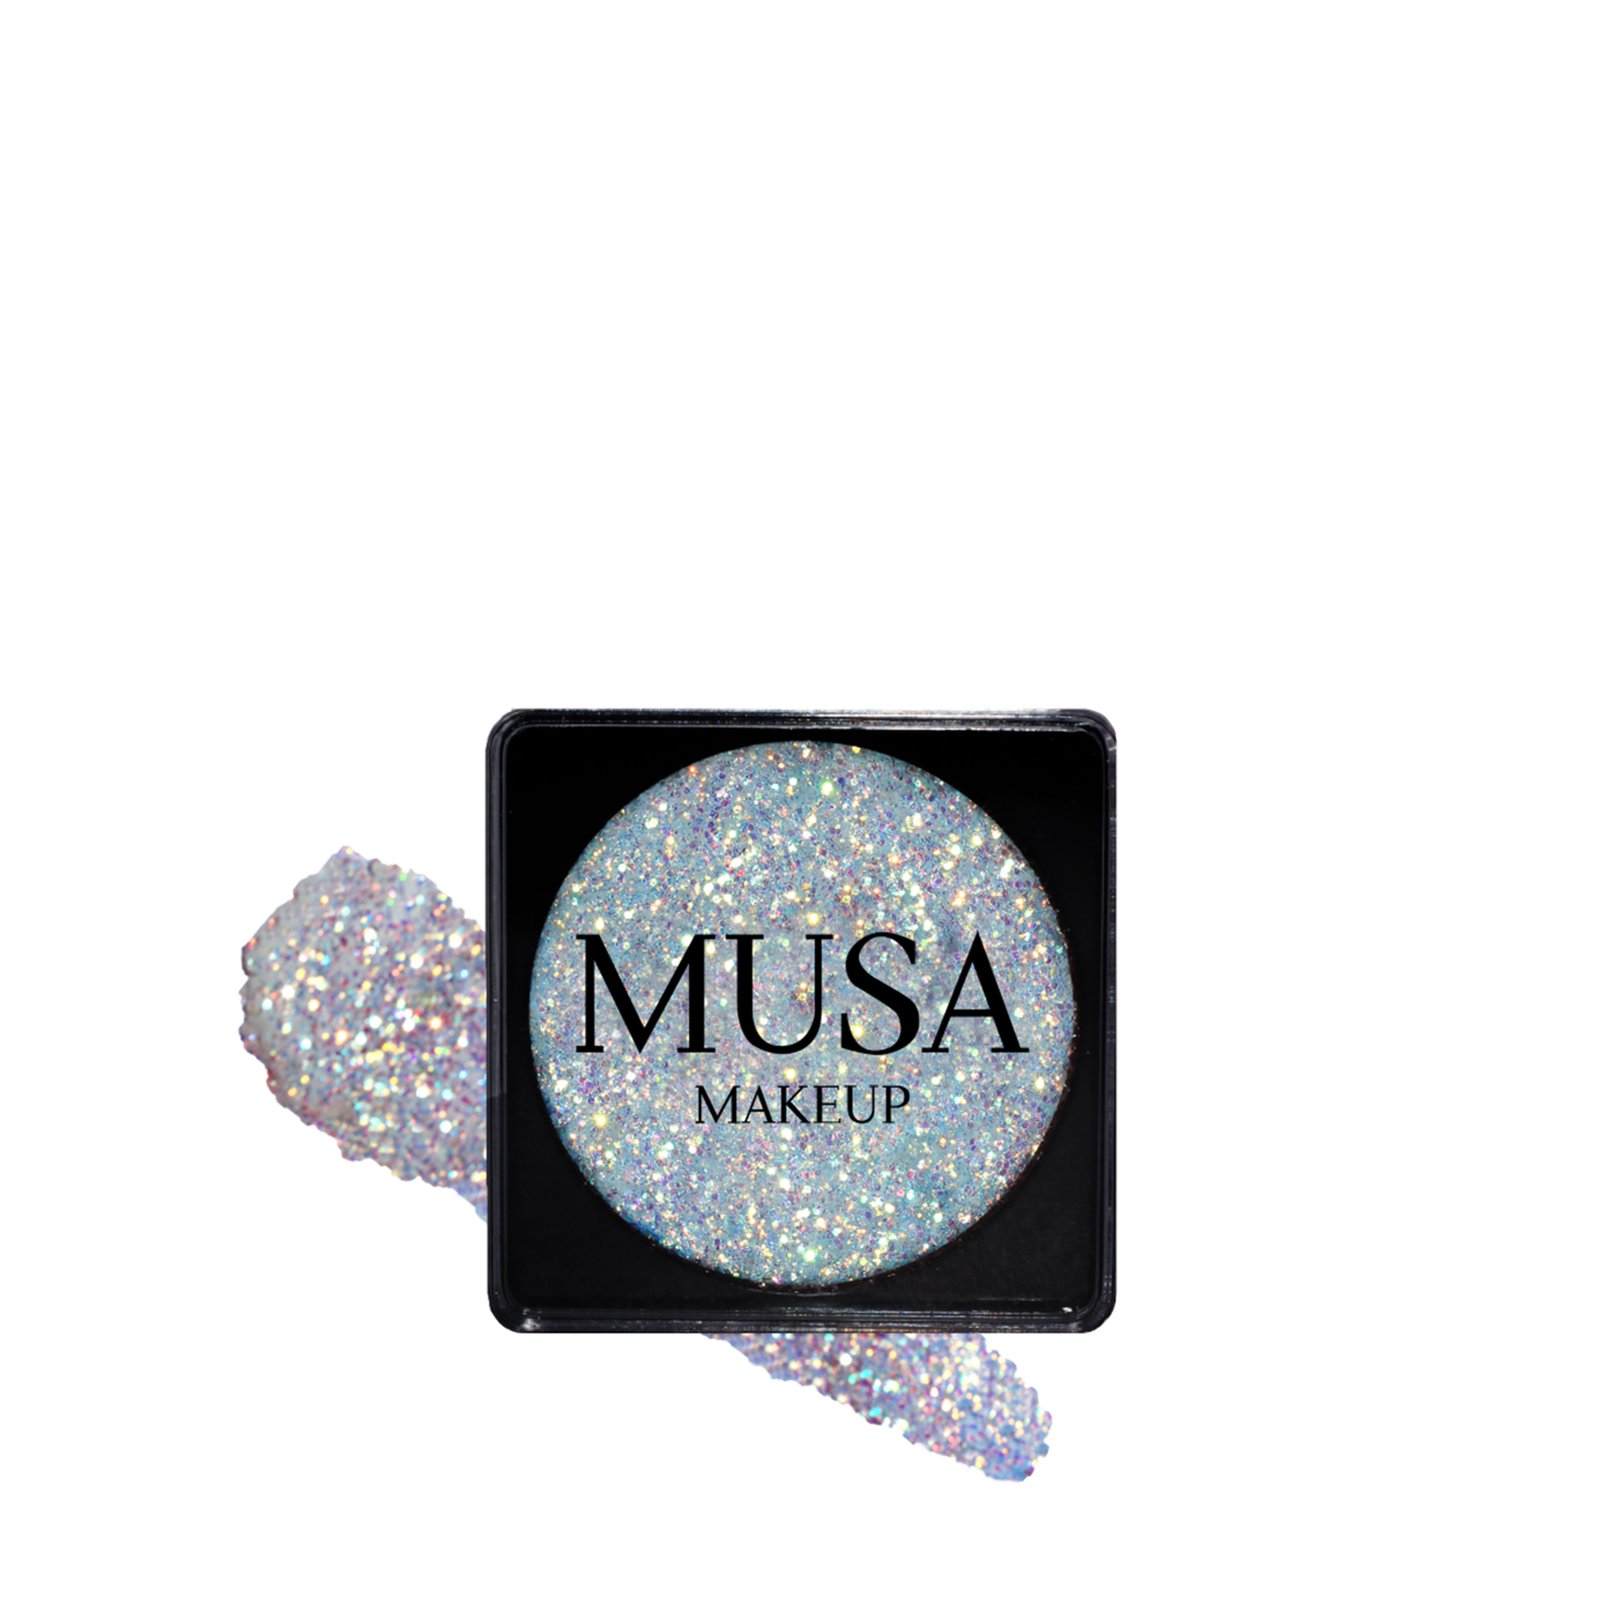 MUSA Makeup Creamy Glitter Celestial 4g